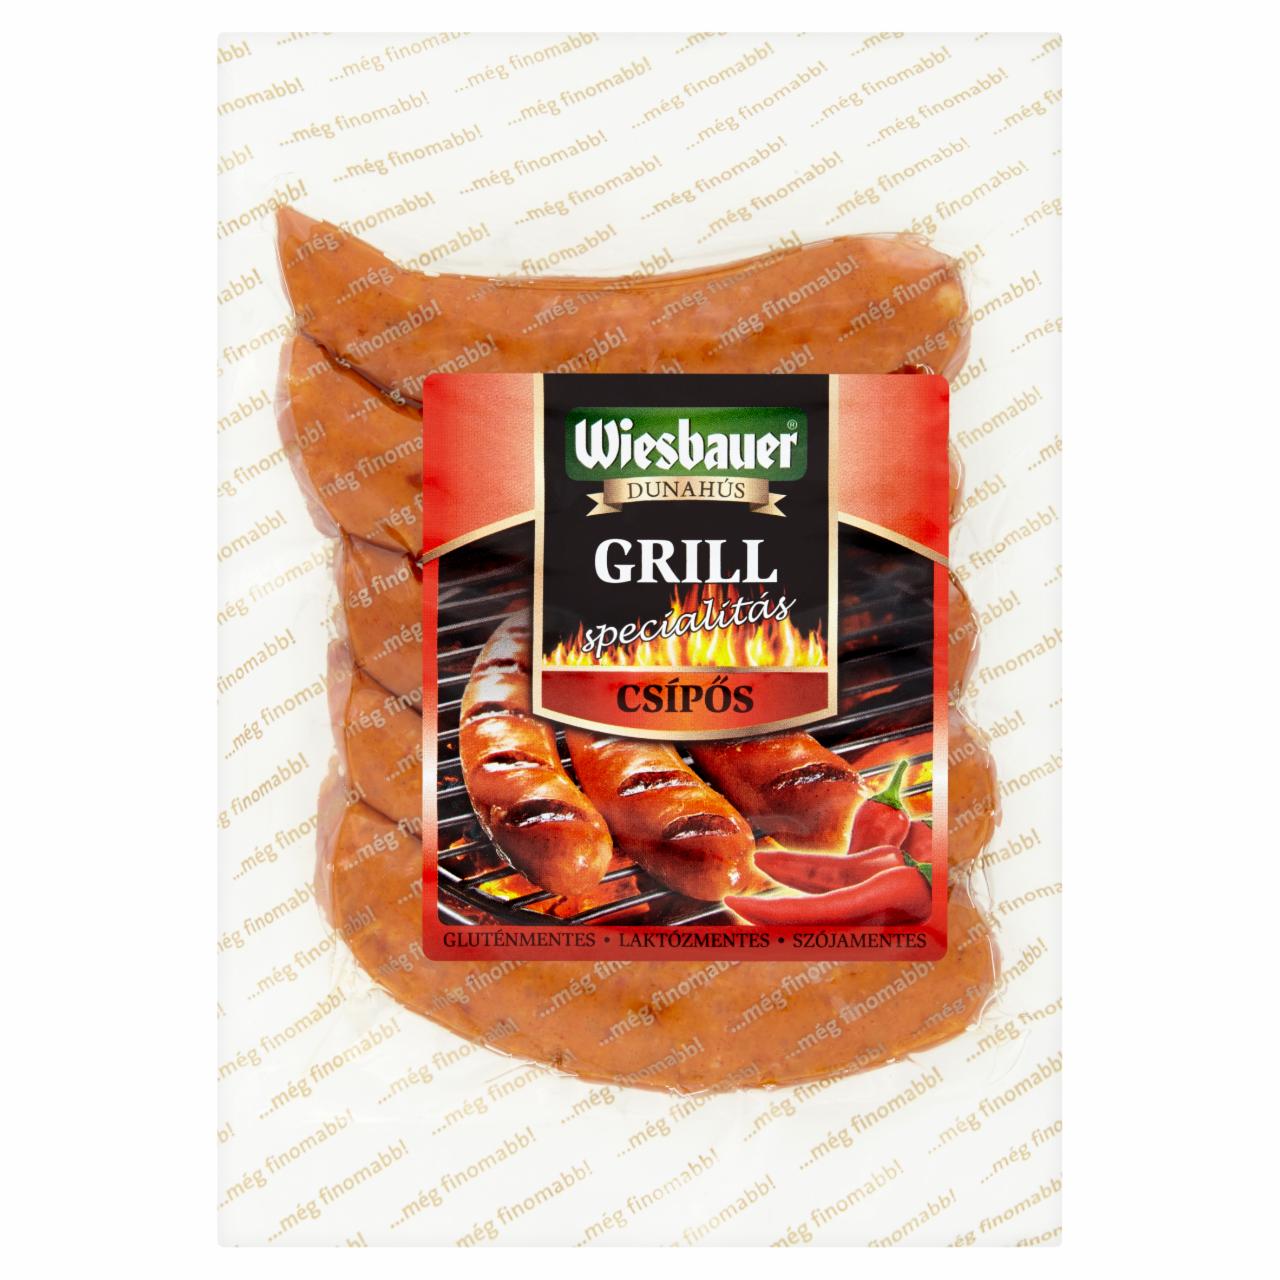 Képek - Wiesbauer csípős grill specialitás 300 g